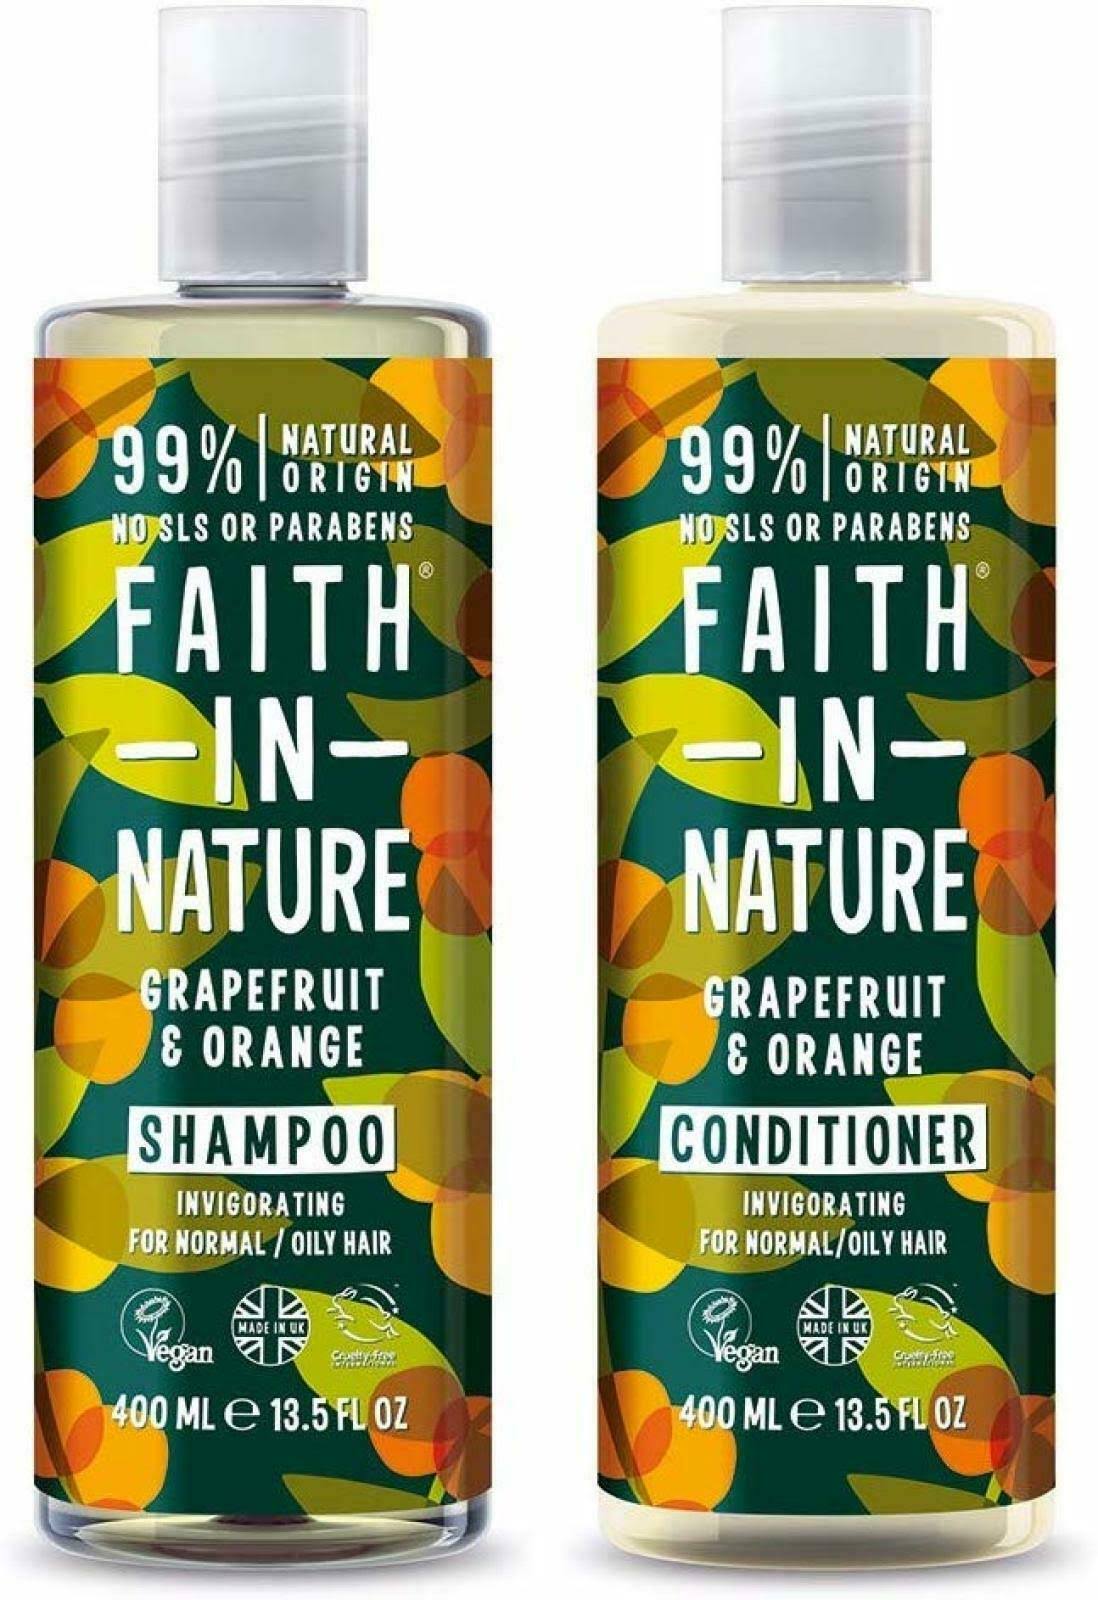 Faith in Nature - Grapefruit & Orange Shampoo & Conditioner